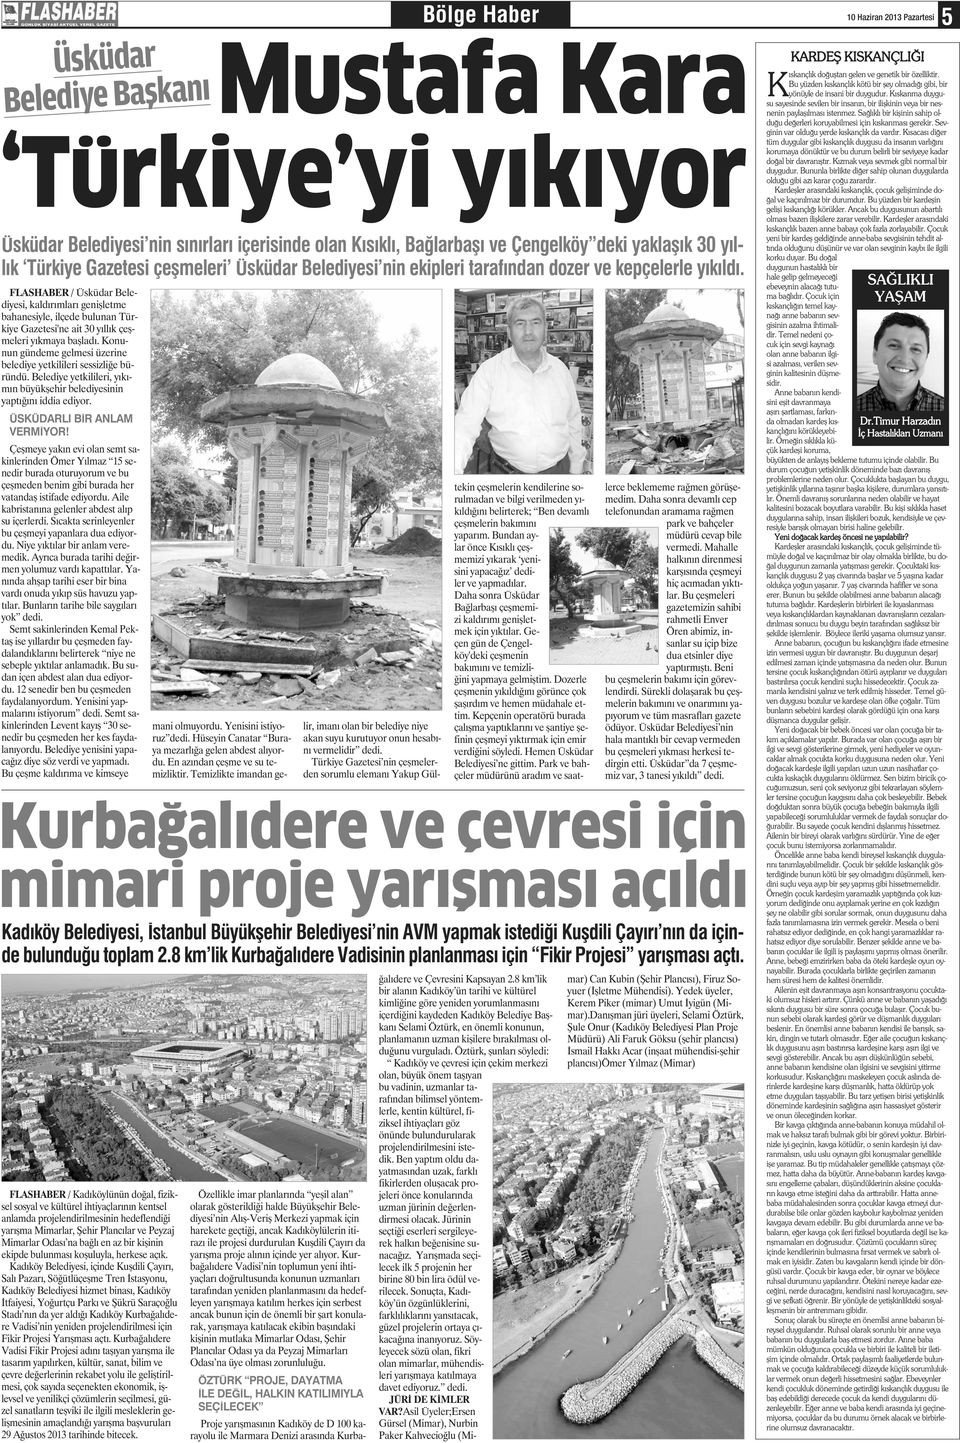 FLASHABER / Üsküdar Belediyesi, kaldırımları geişletme bahaesiyle, ilçede bulua Türkiye Gazetesi'e ait 30 yıllık çeşmeleri yıkmaya başladı.